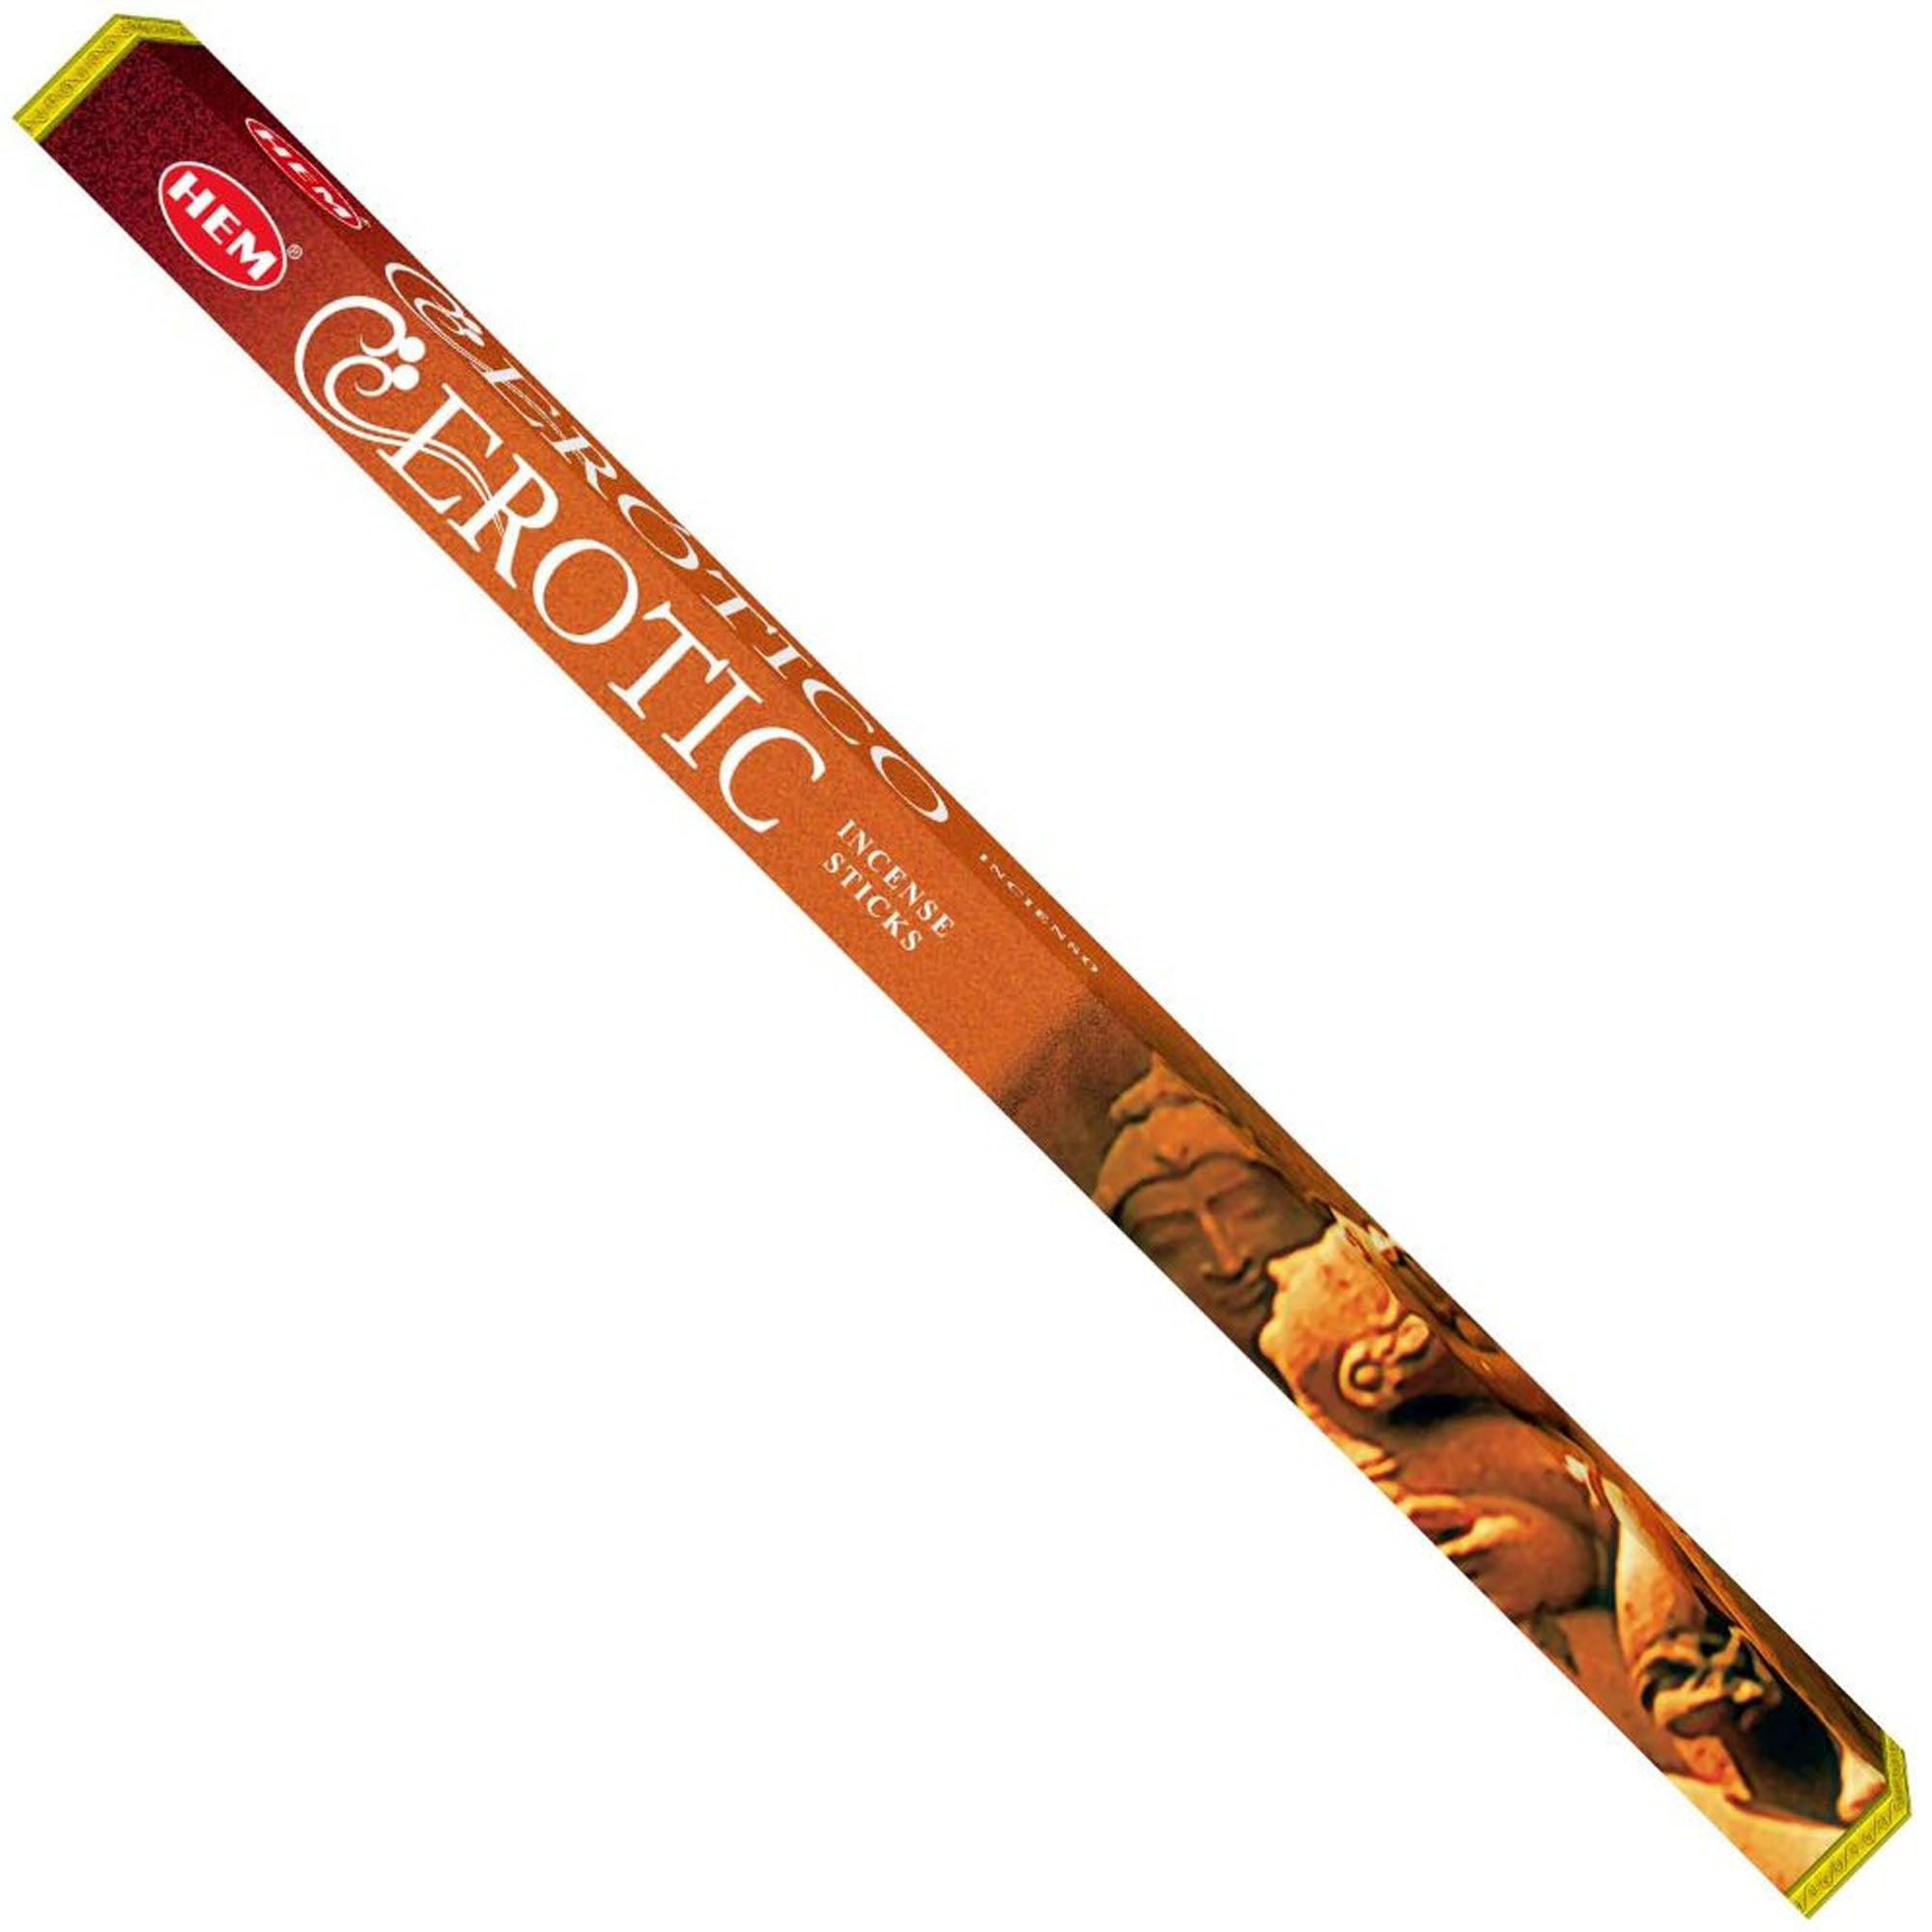 Hem - Square - Erotic Incense Sticks